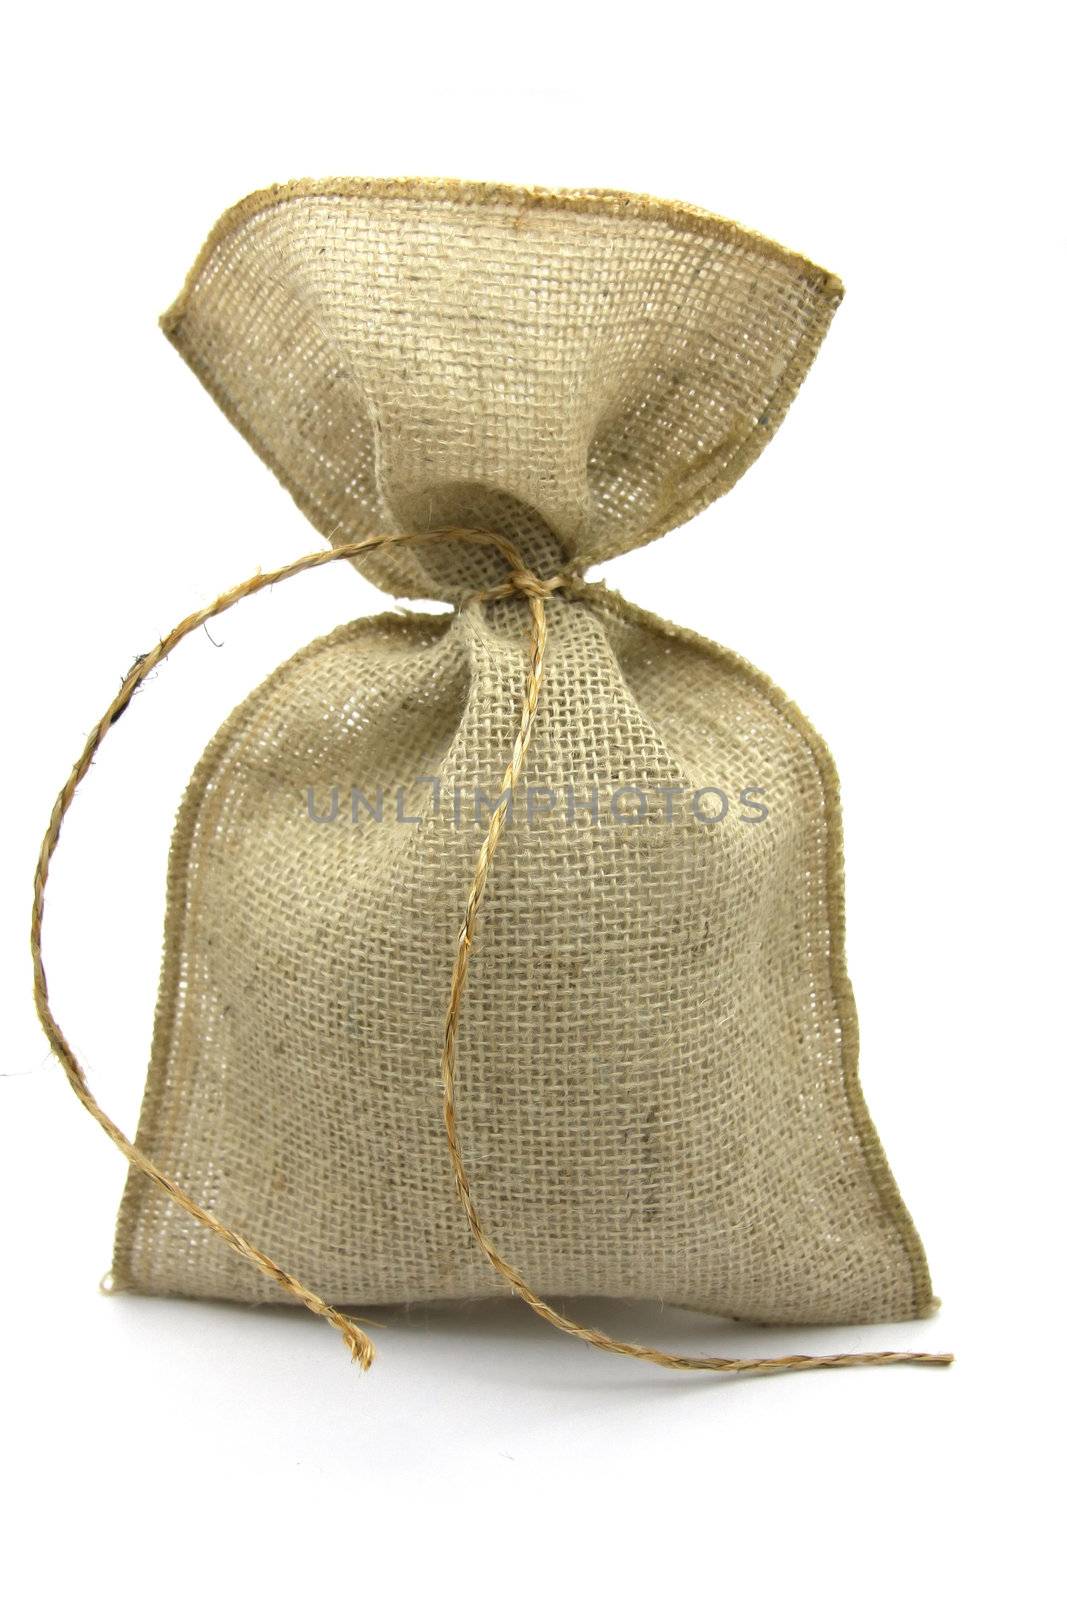 Burlap brown sack, gift bag